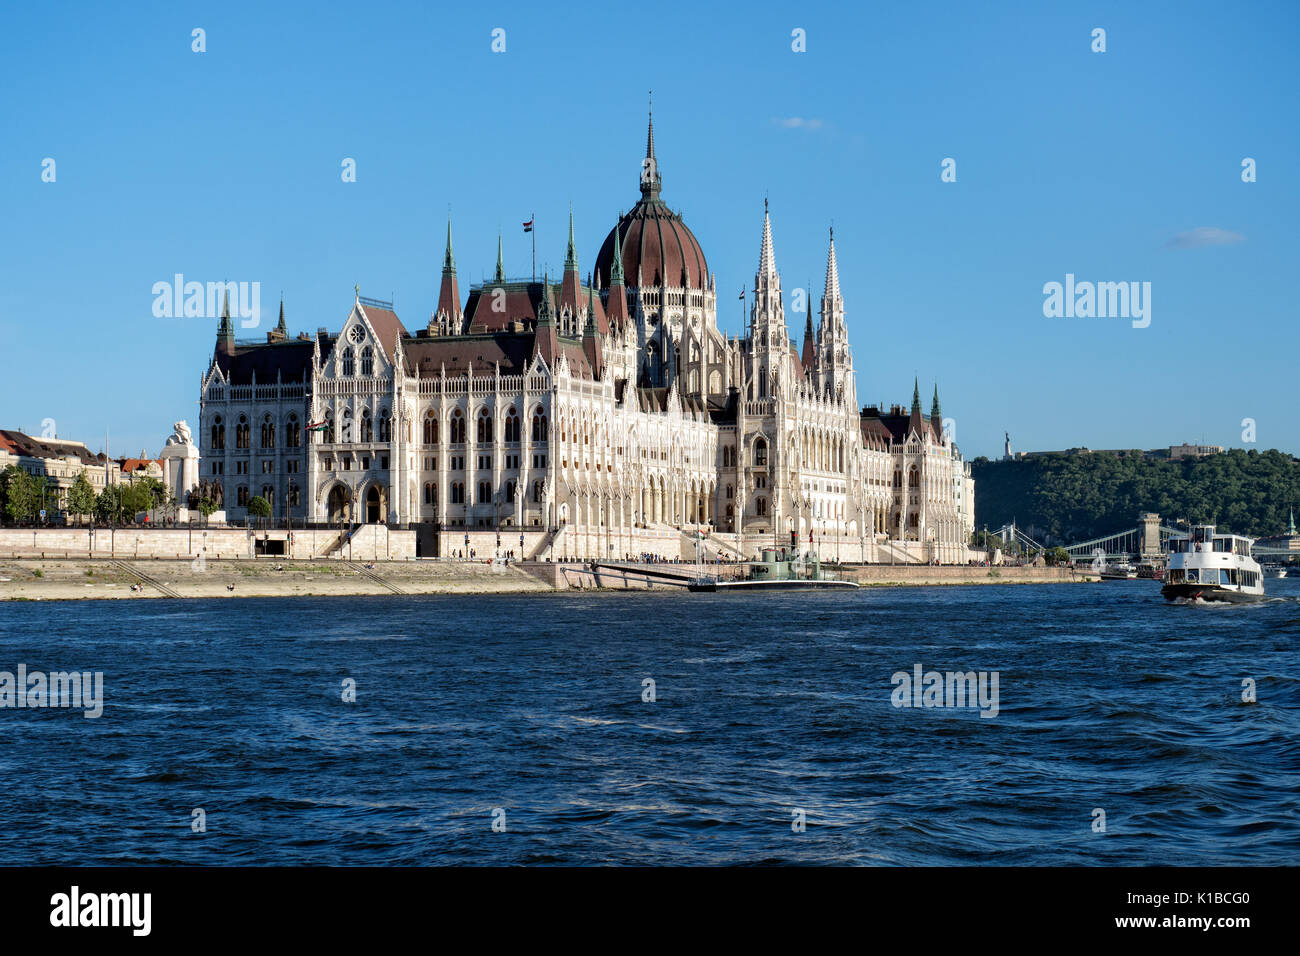 Das ungarische Parlament Gebäude von der Donau in Budapest. Stockfoto